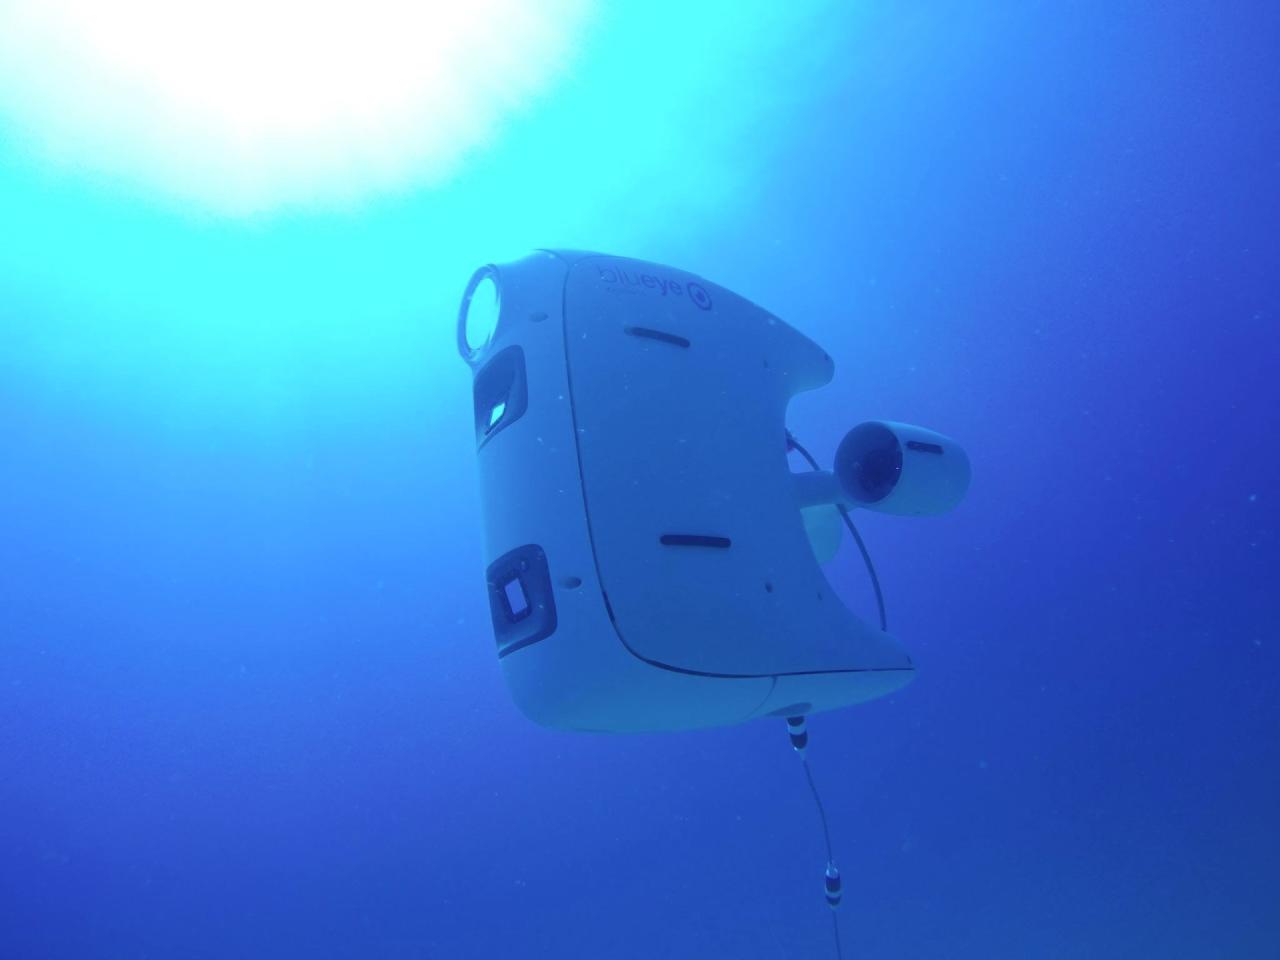 Vår første prototype PioneerX på vei ned i dypet